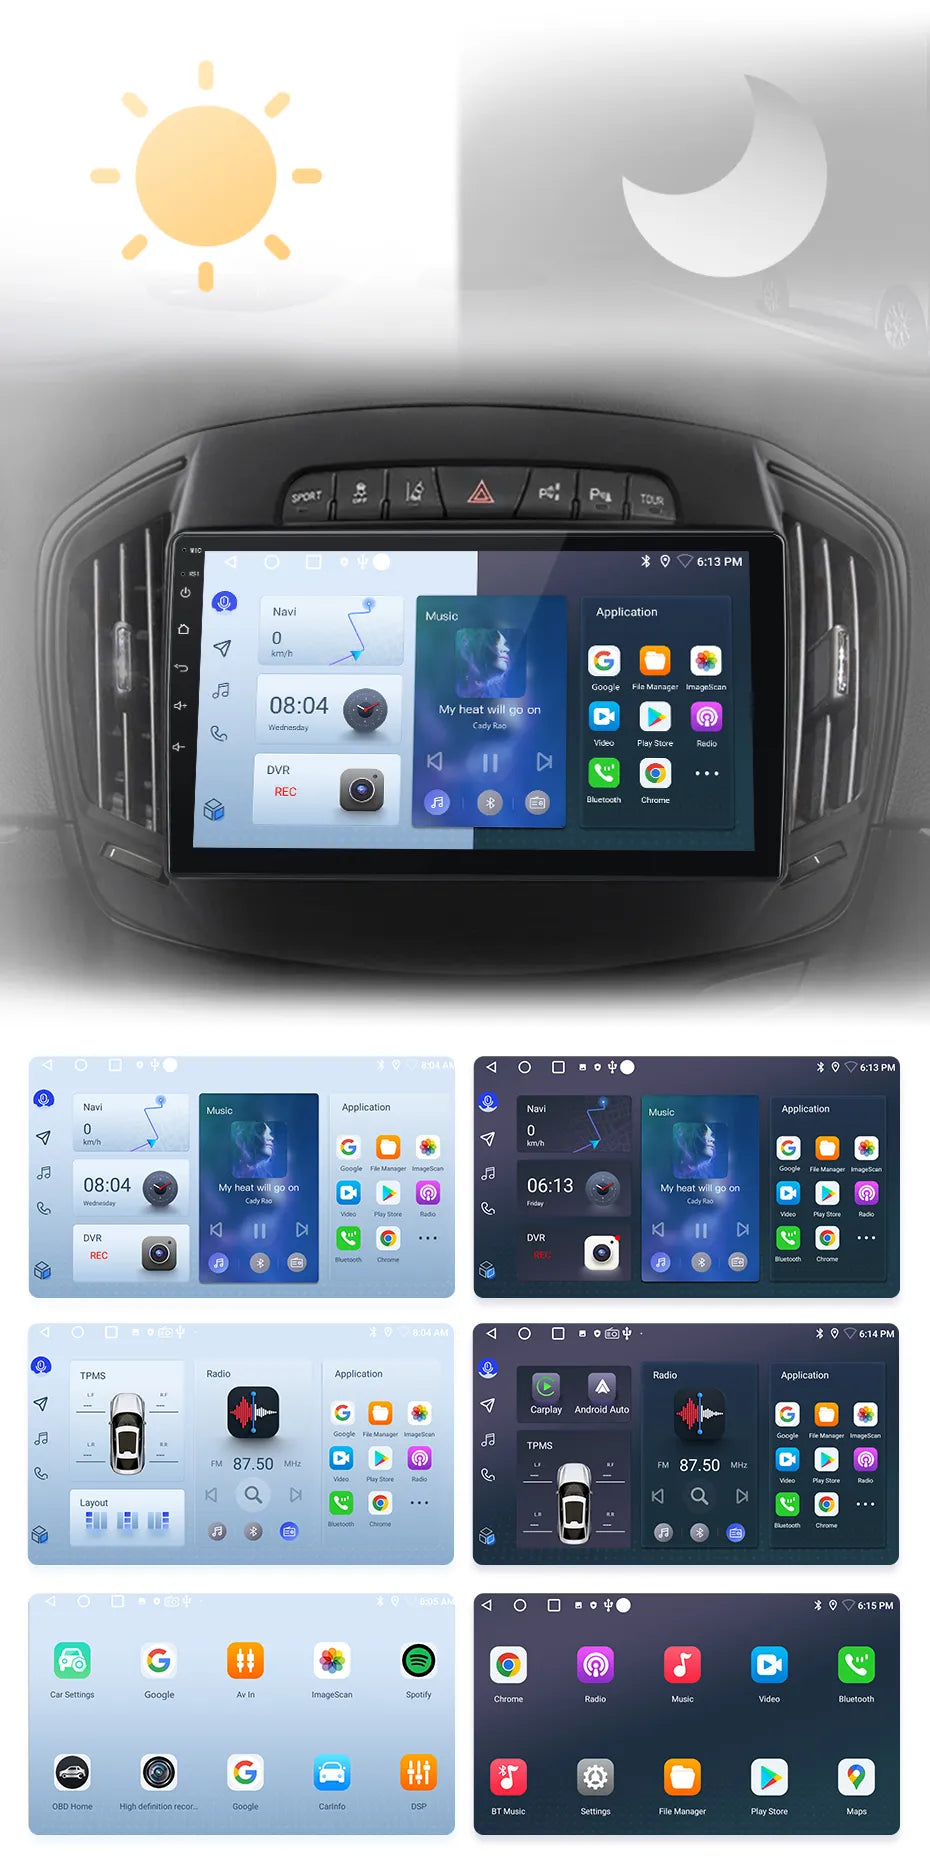 Radio Android Auto Carplay Opel Insignia 2013 - 2017